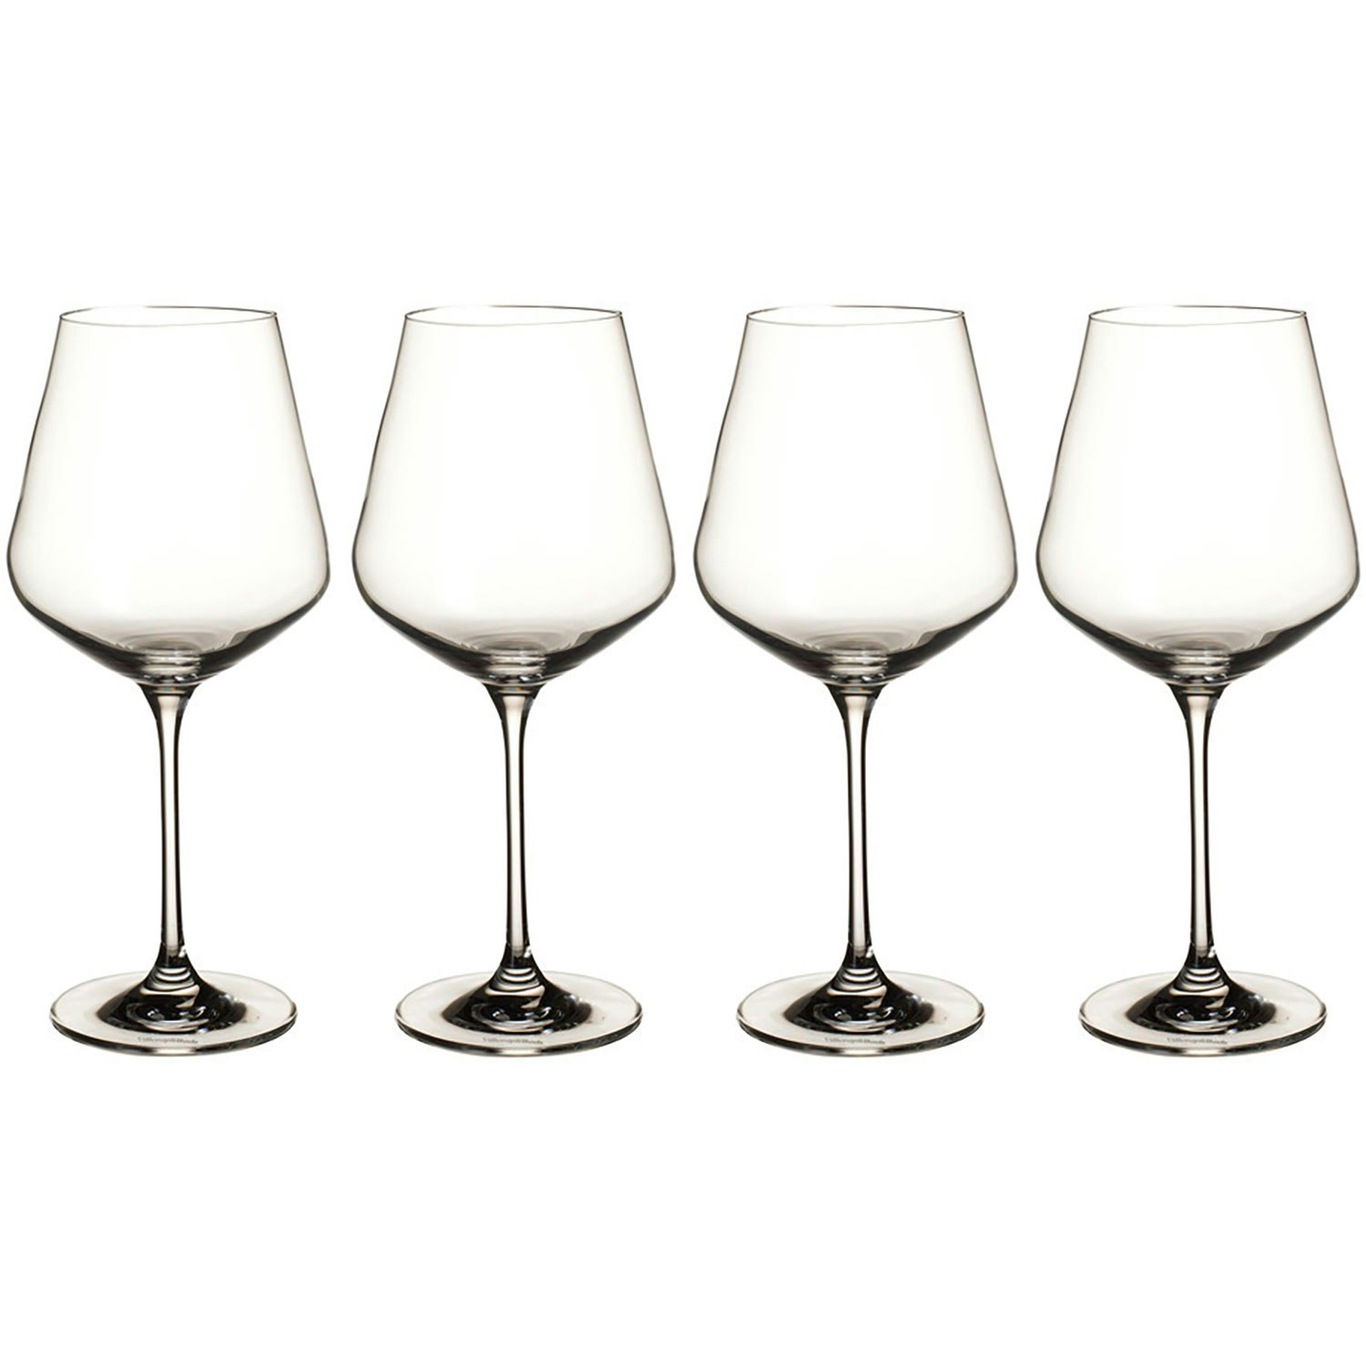 https://royaldesign.com/image/2/villeroy-boch-la-divina-red-wine-goblet-set-4pcs-0?w=800&quality=80